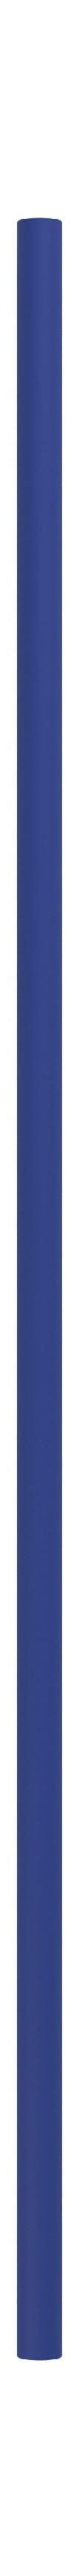 Moebe Système de étagères / étagères murales jambe 85 cm, bleu profond